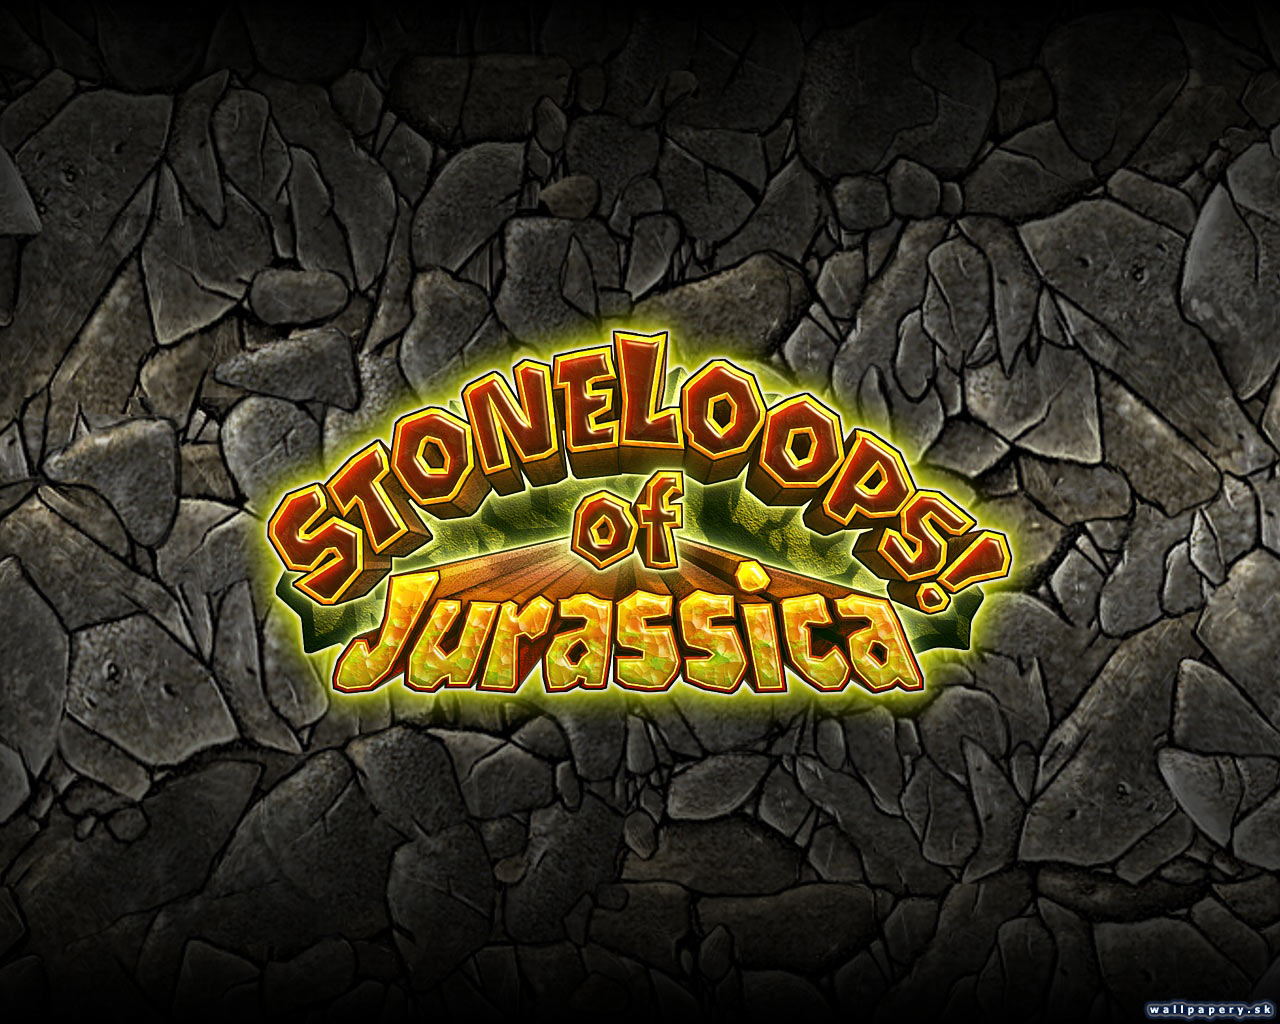 StoneLoops! of Jurassica - wallpaper 2